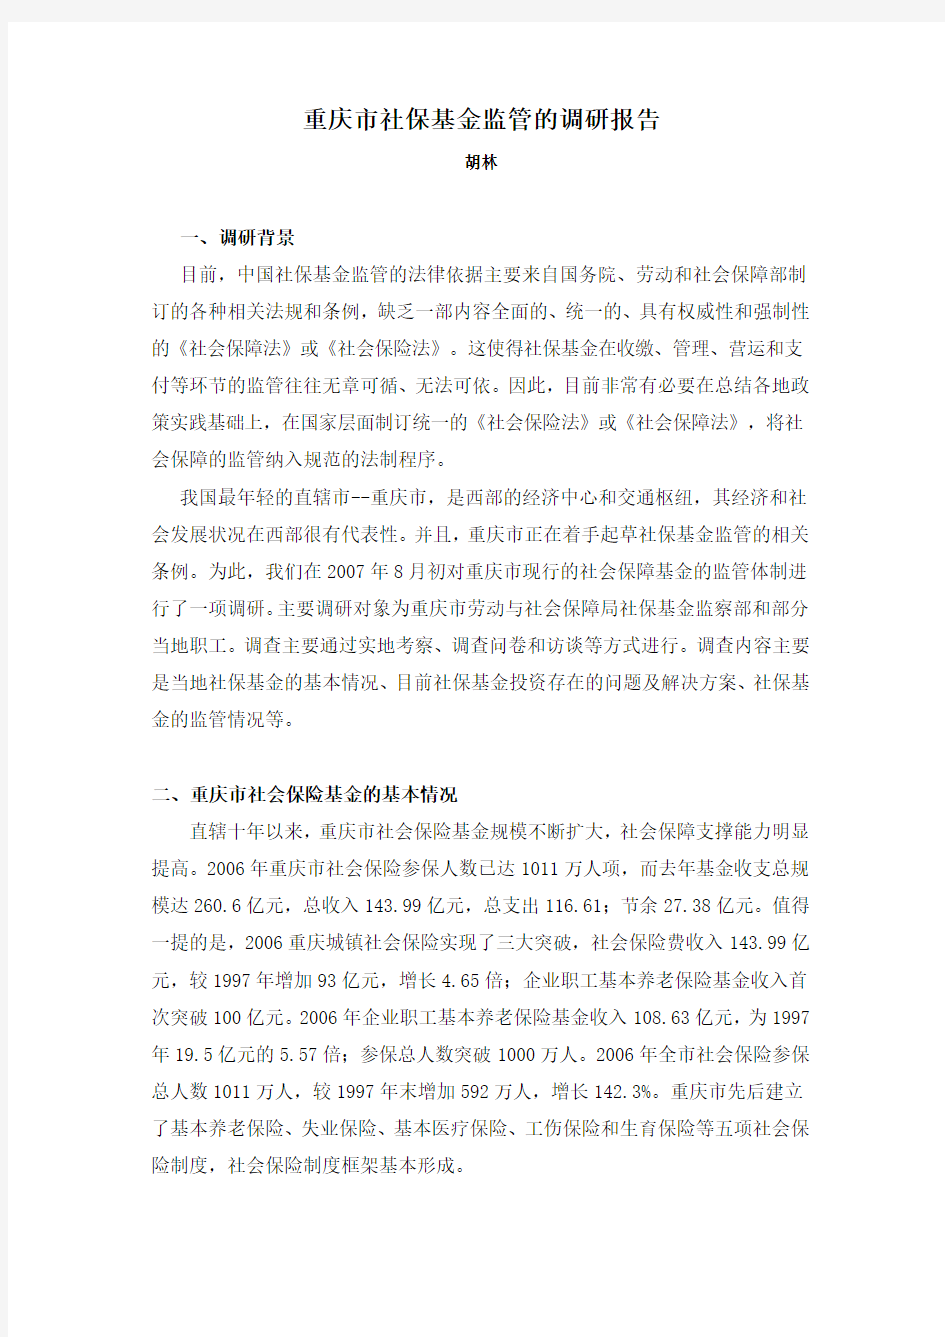 重庆市社保基金监管的调研报告